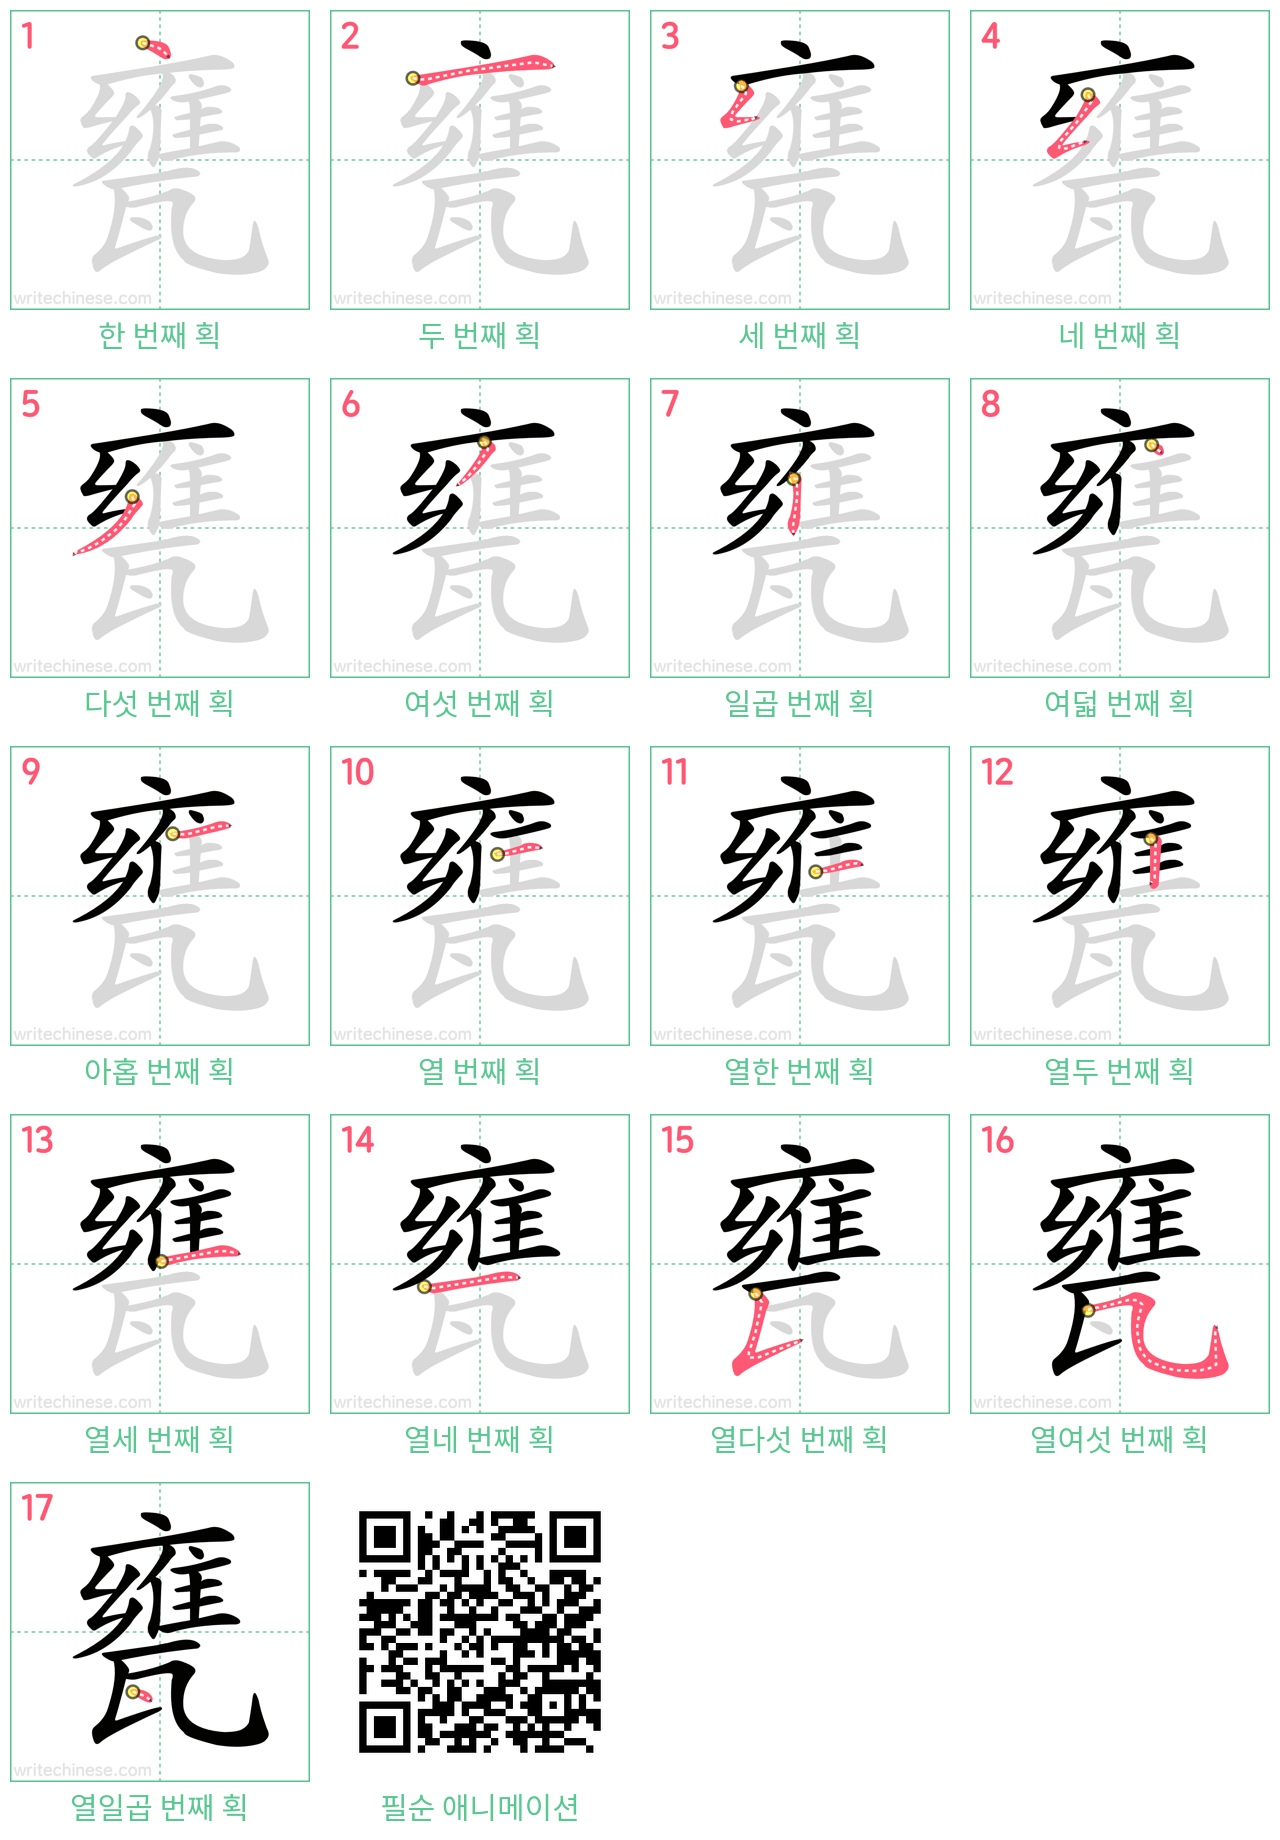 甕 step-by-step stroke order diagrams